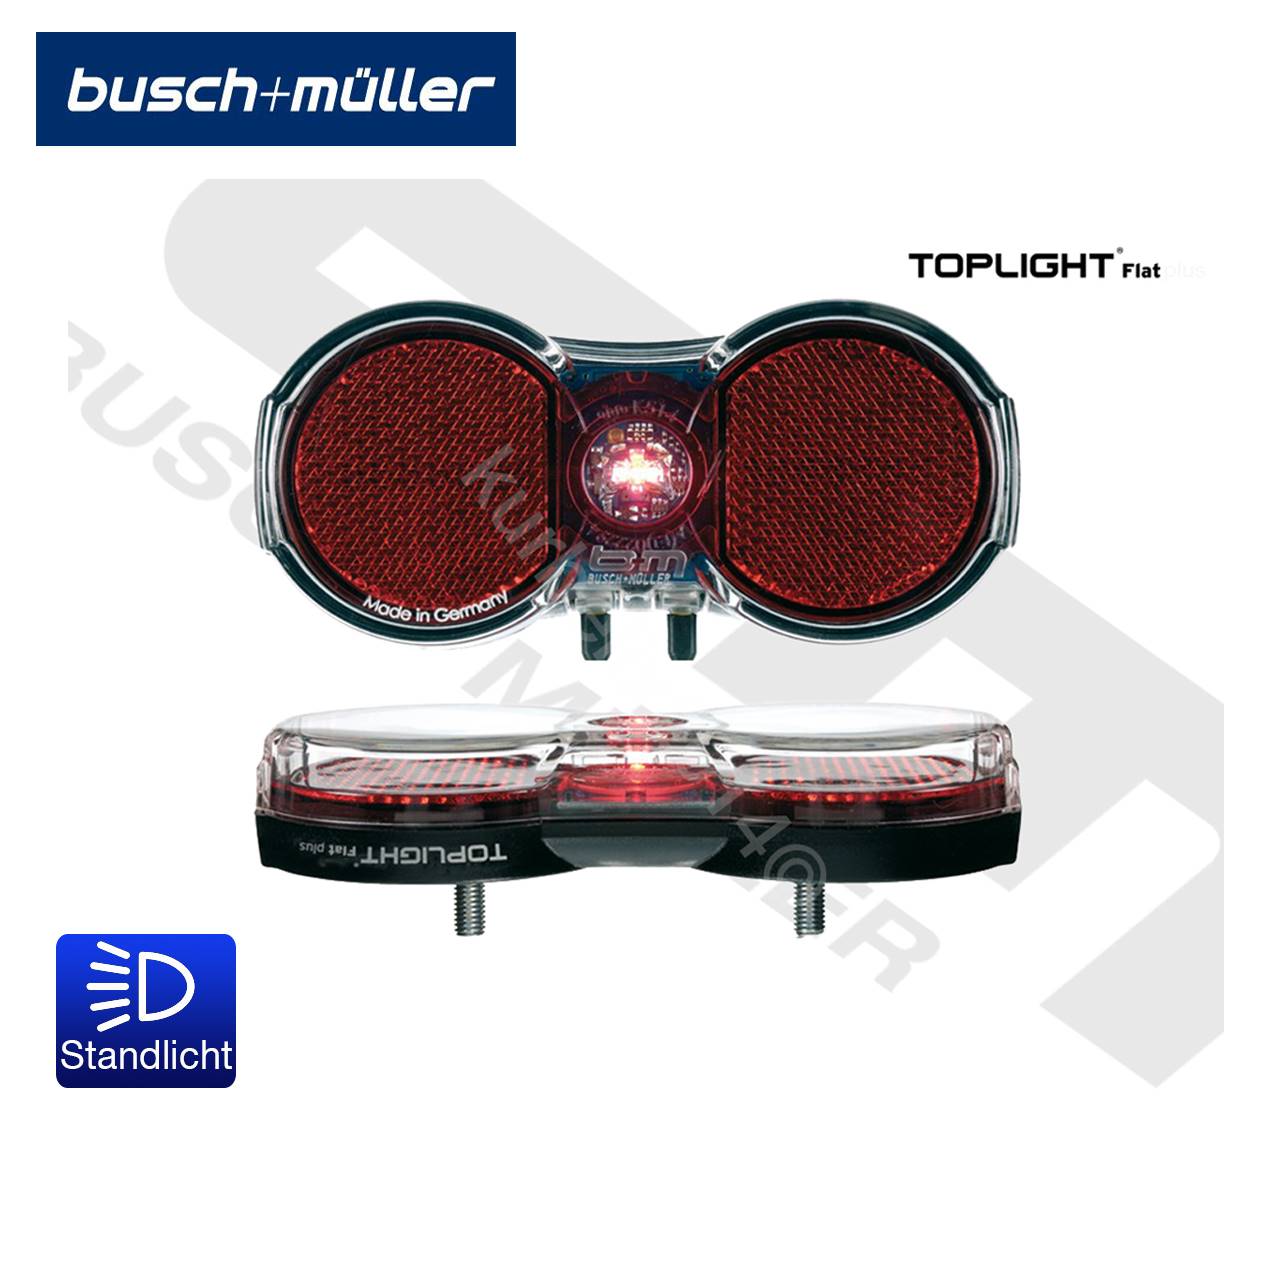 Busch & Müller Toplight Flat plus Fahrrad-Rücklicht